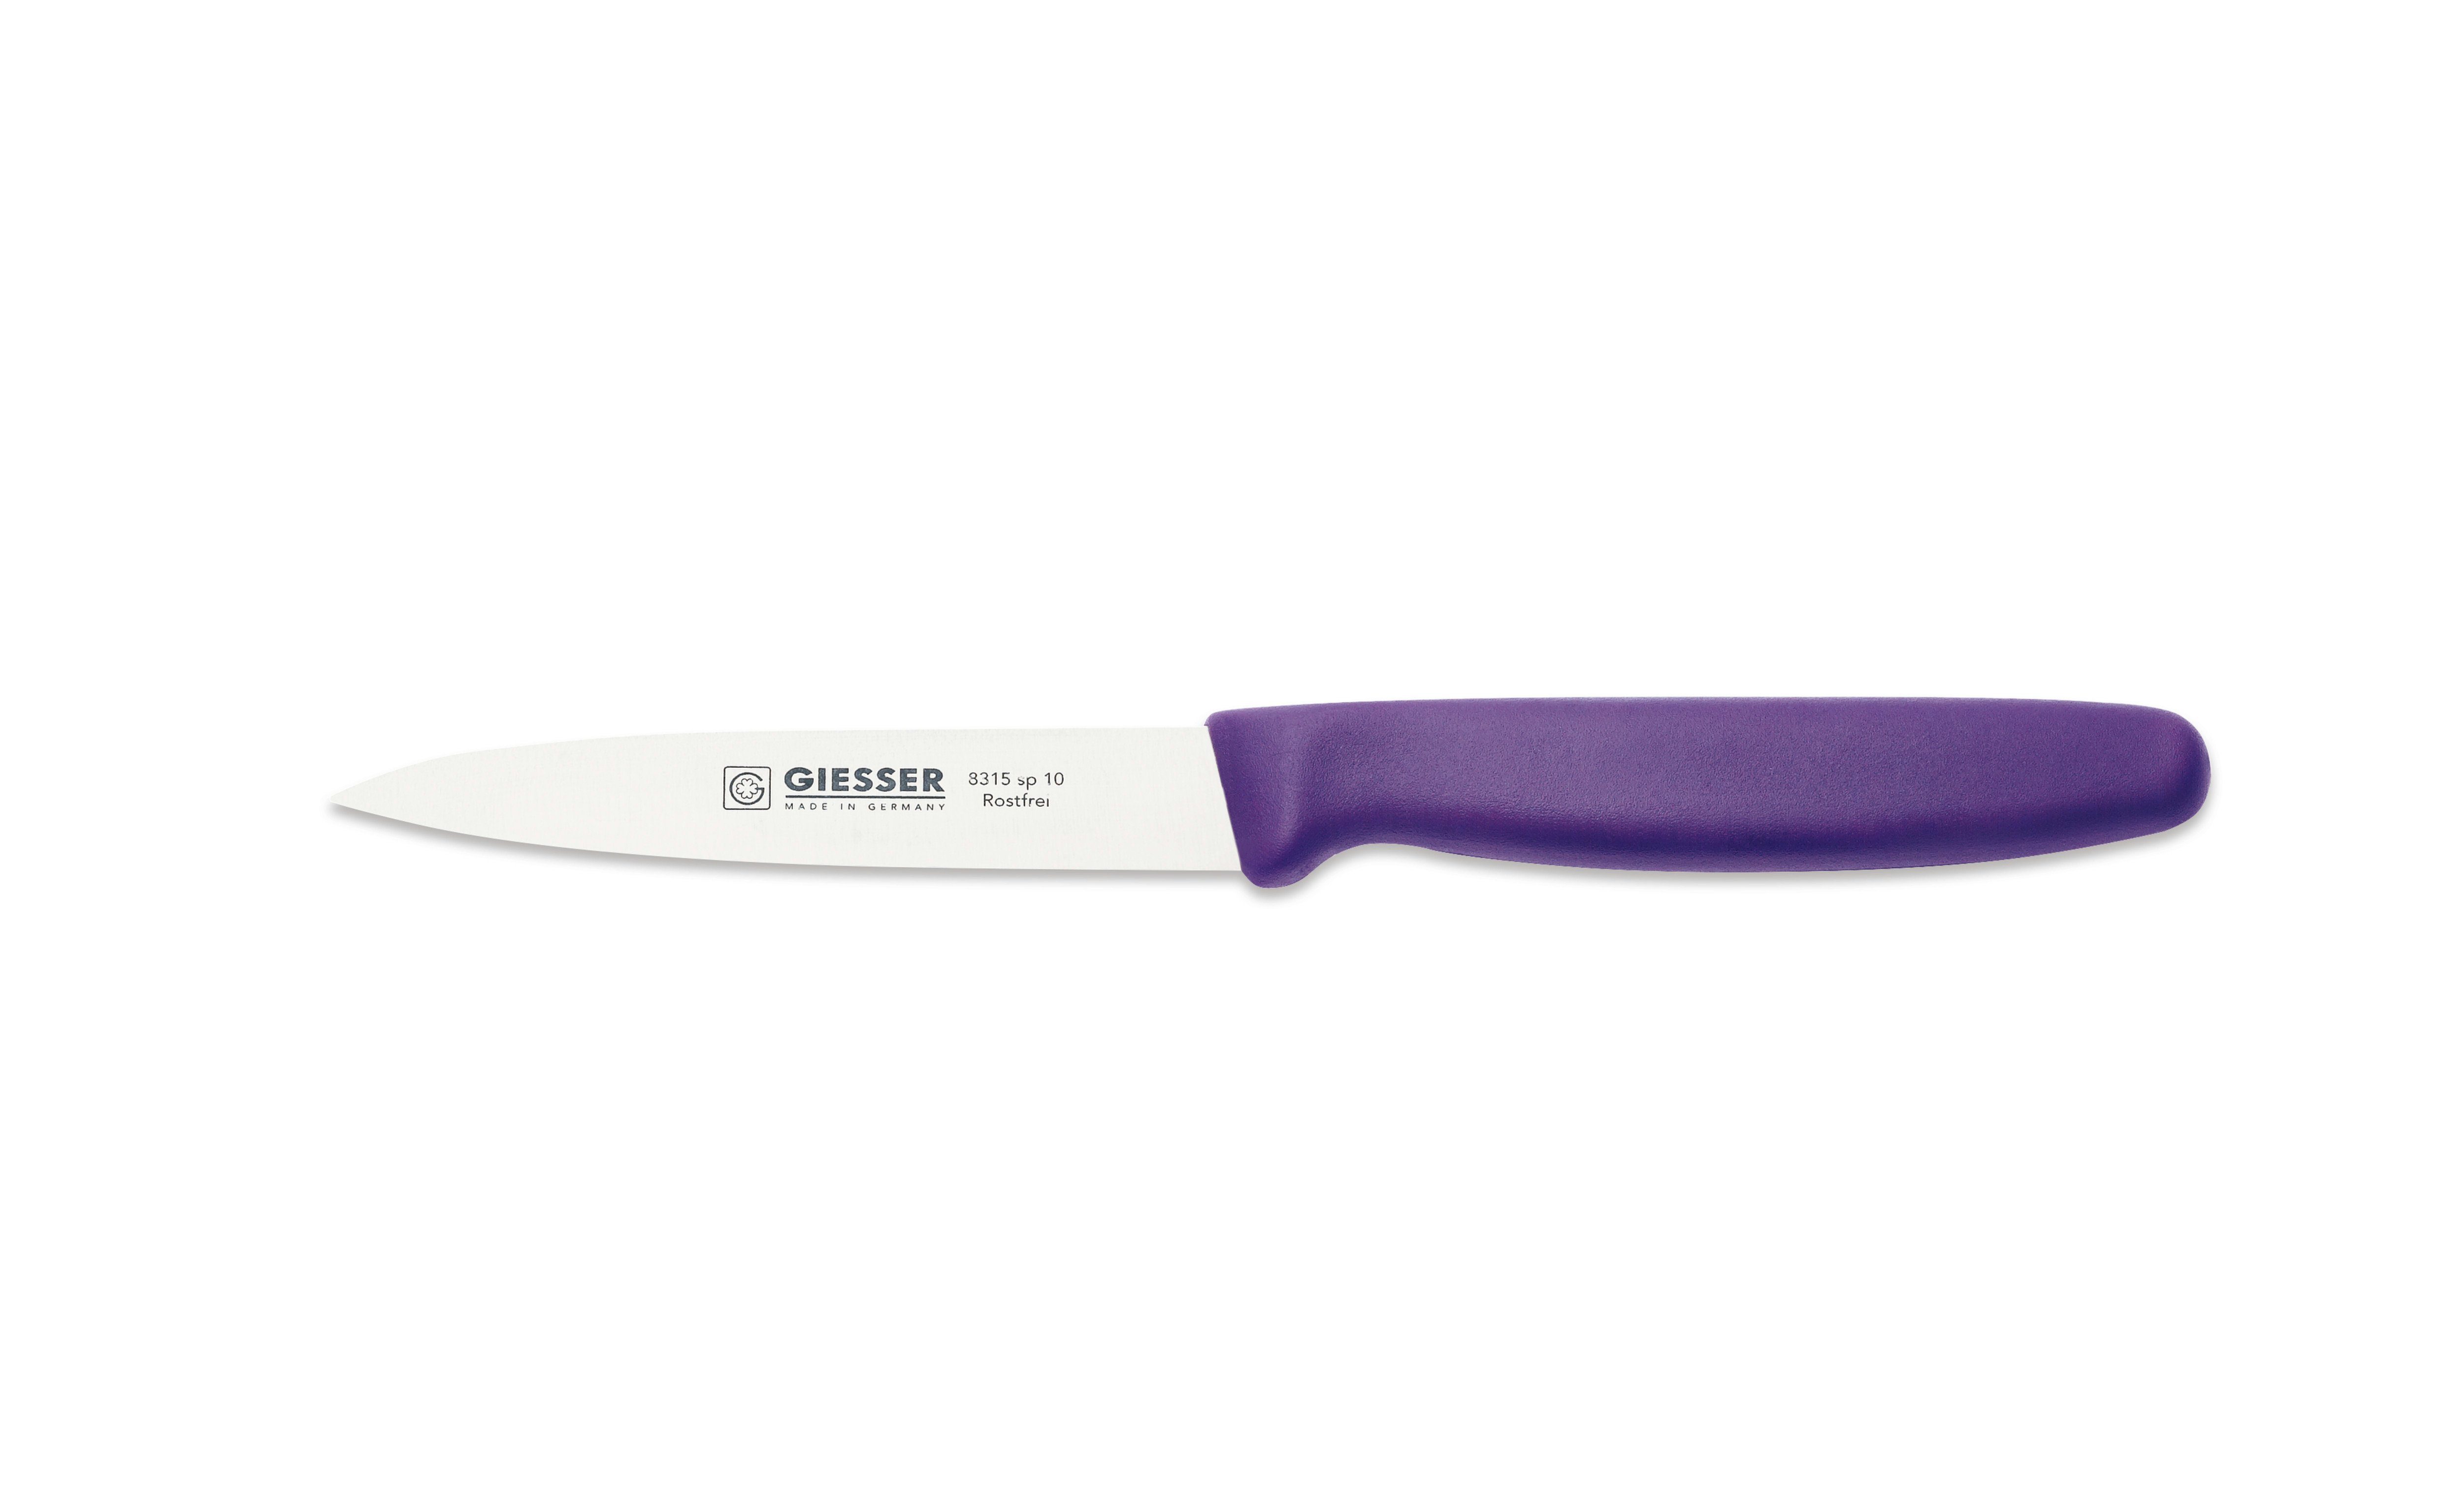 Violett oder 8/10/12, Wellenschliff Gemüsemesser Messer 8315 Giesser sp 3mm mit Spickmesser ohne Küchenmesser